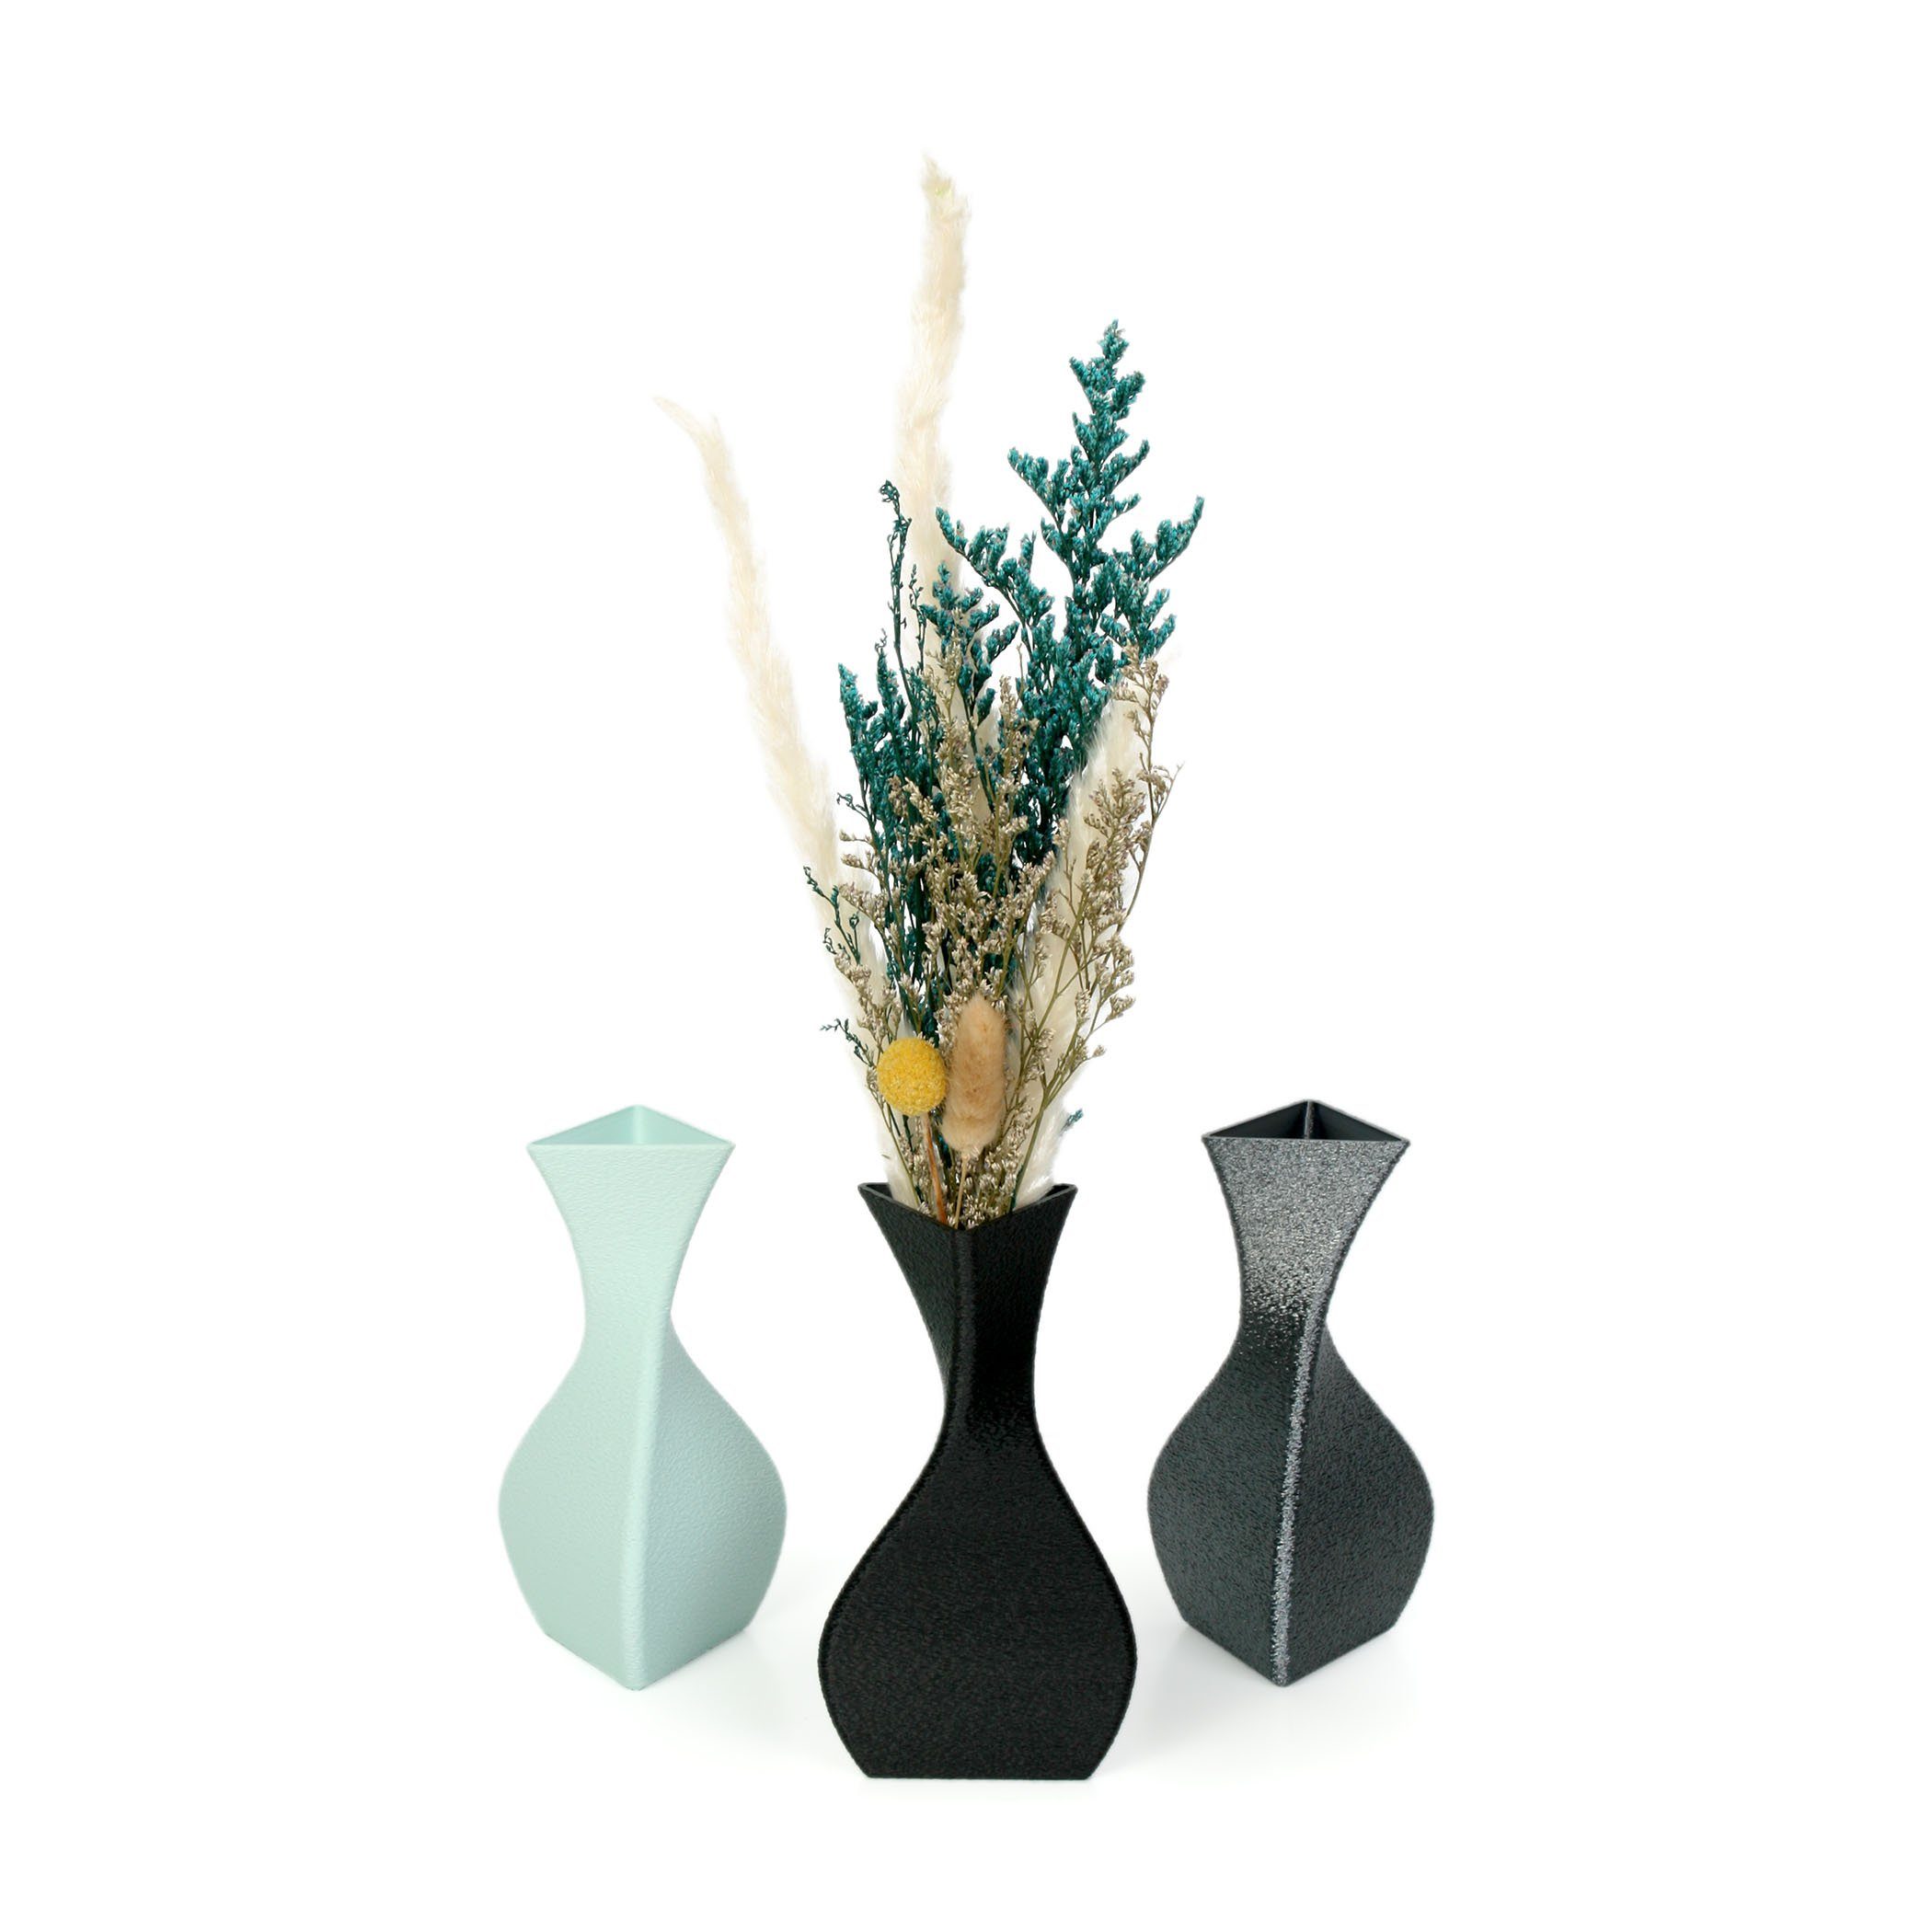 Dekorative bruchsicher Vase Rohstoffen; nachwachsenden White Feder Blumenvase Bio-Kunststoff, & aus Designer wasserdicht – aus Kreative Dekovase